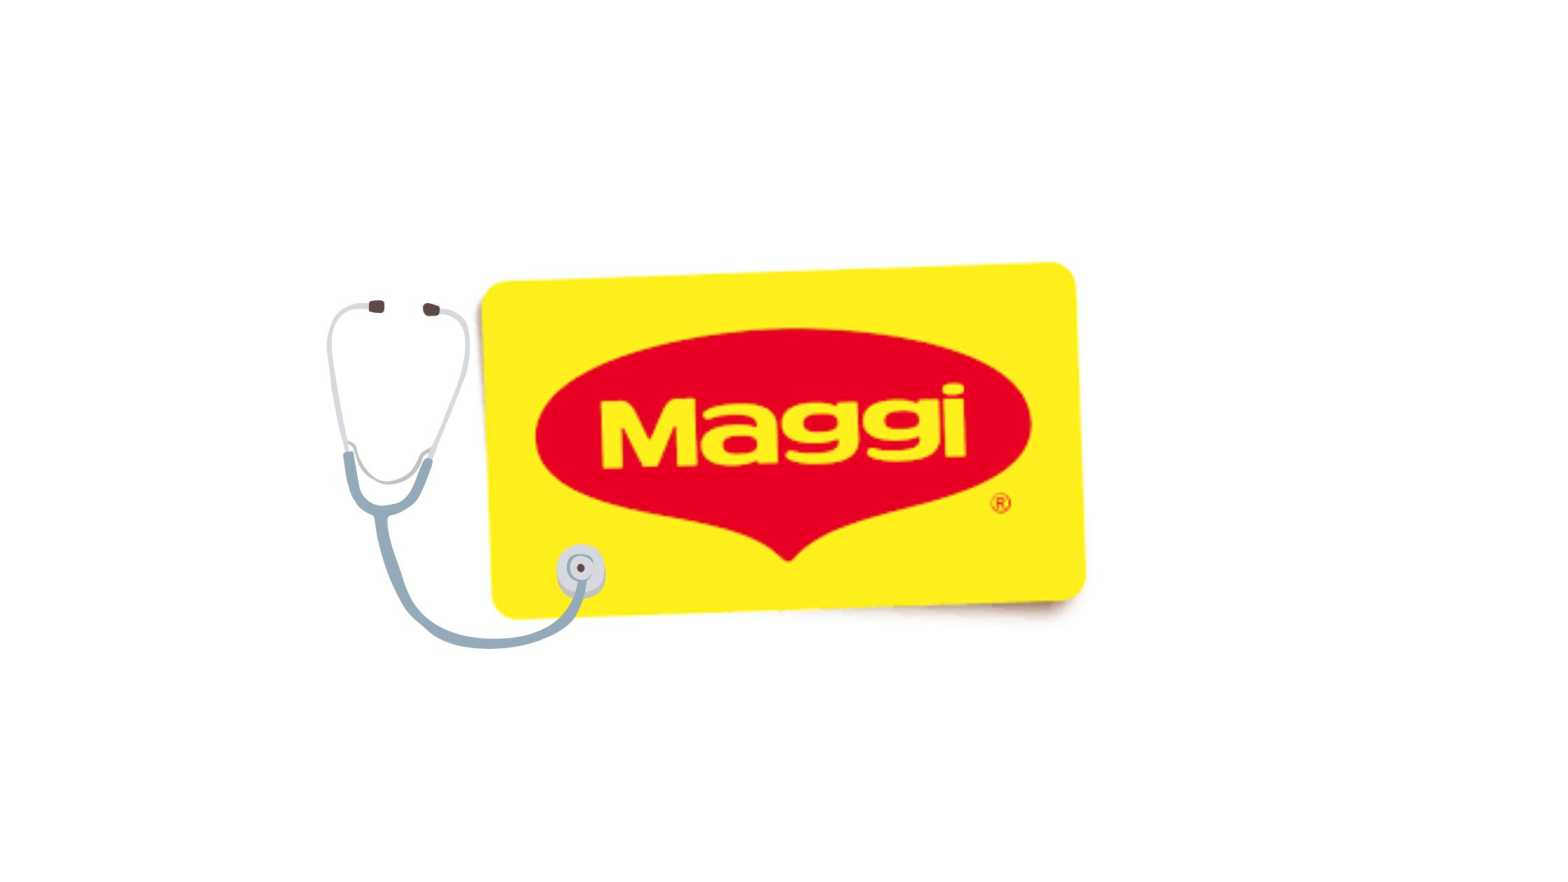 maggi and high blood pressure